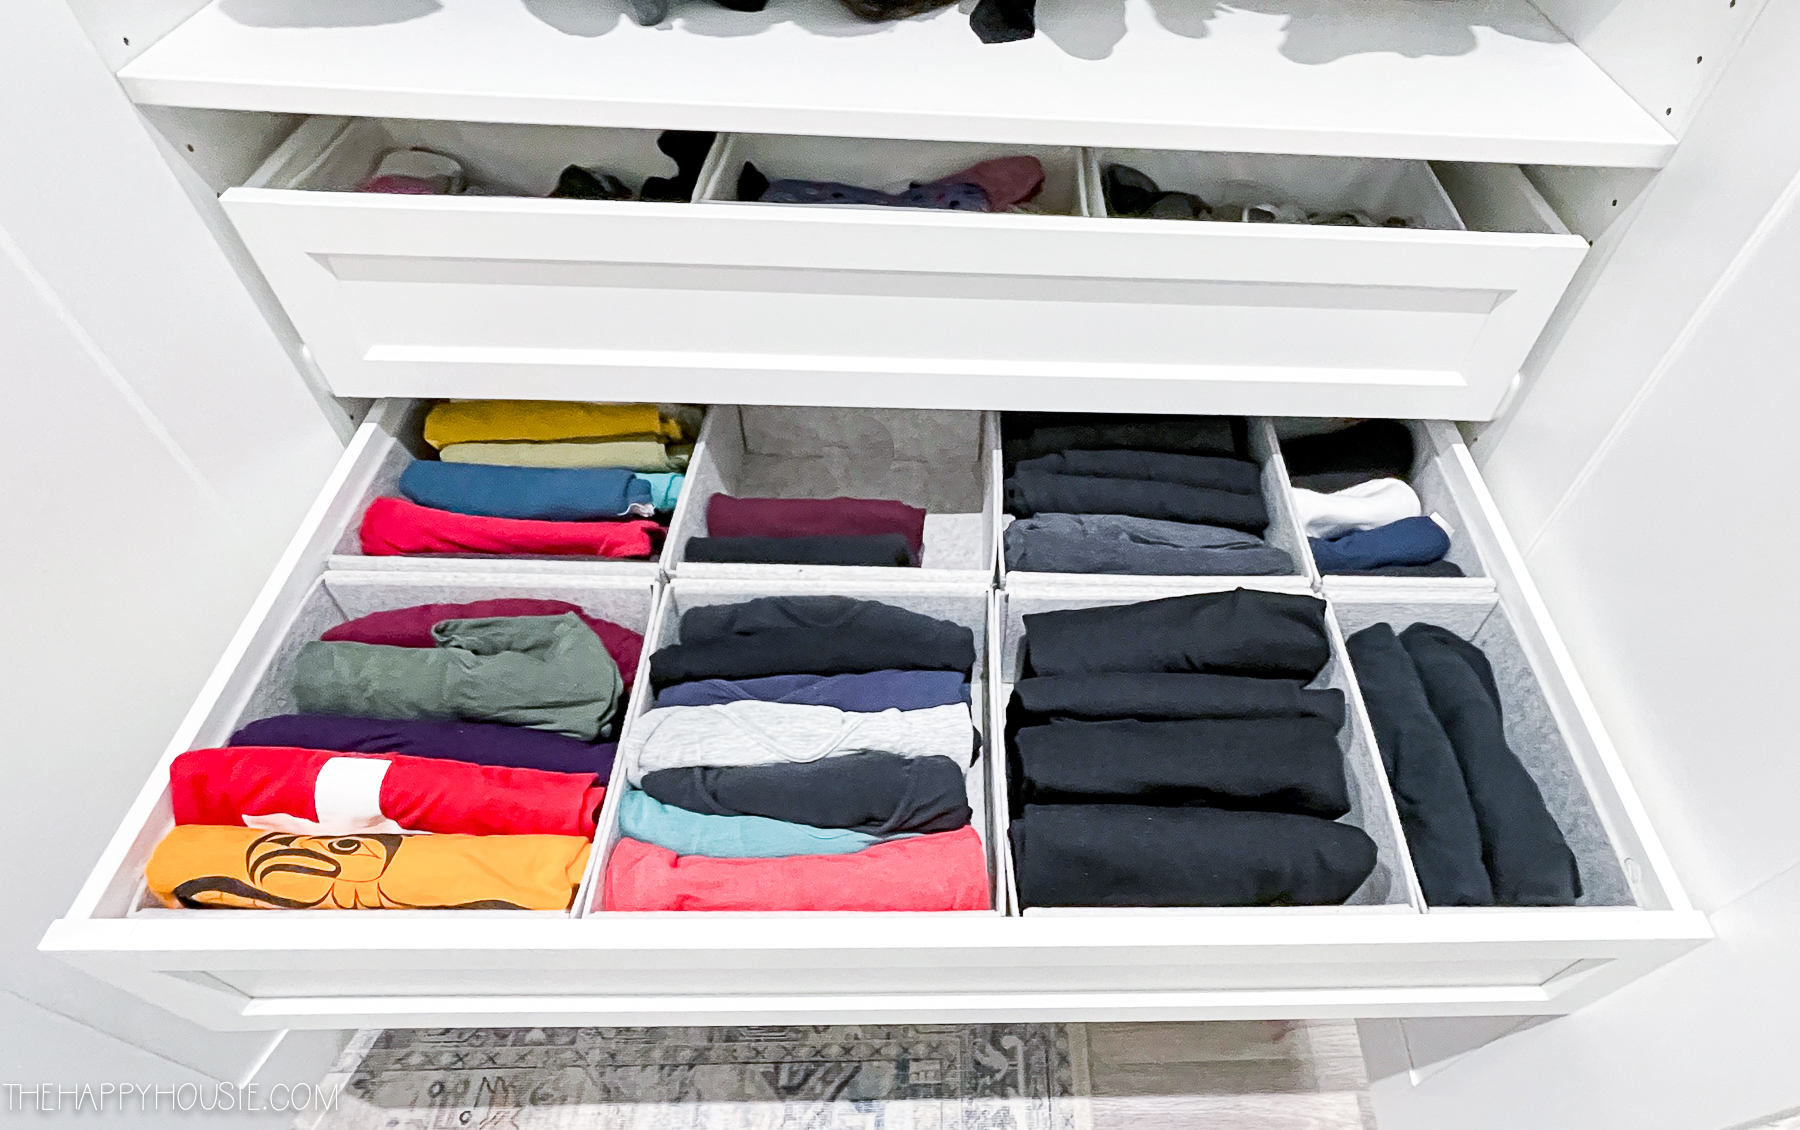 shirts organized in felt drawer organizers as a bedroom organization ideas